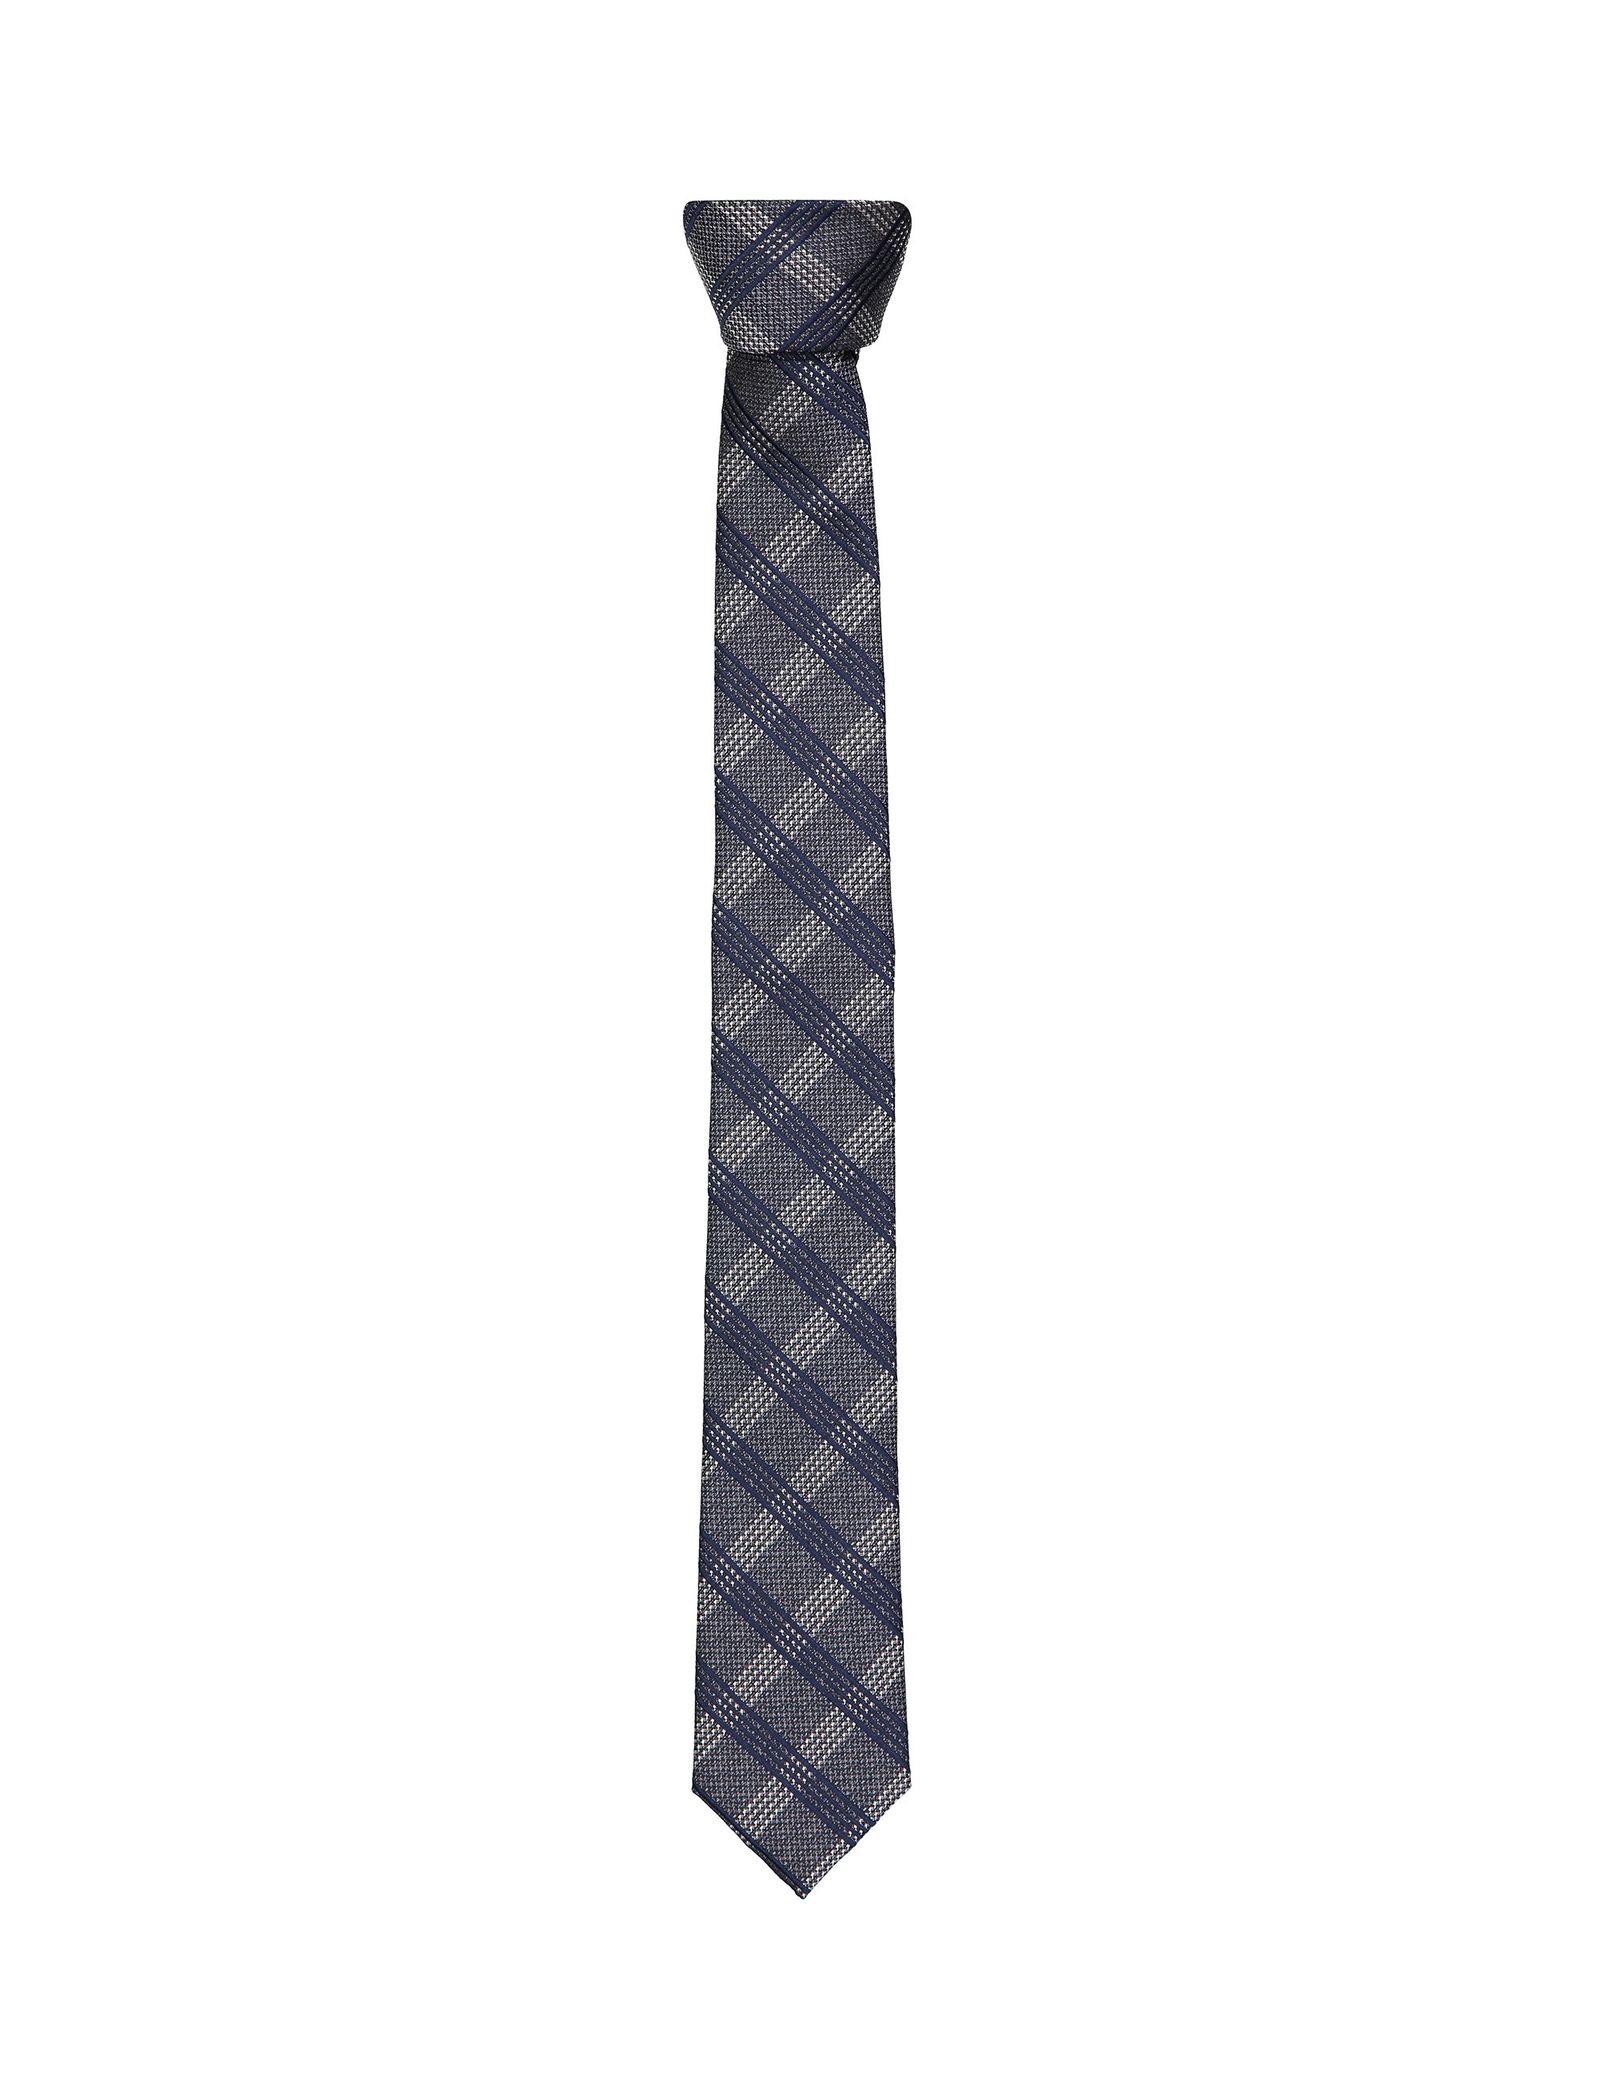 کراوات طرح دار مردانه - سلکتد - طوسي - 2